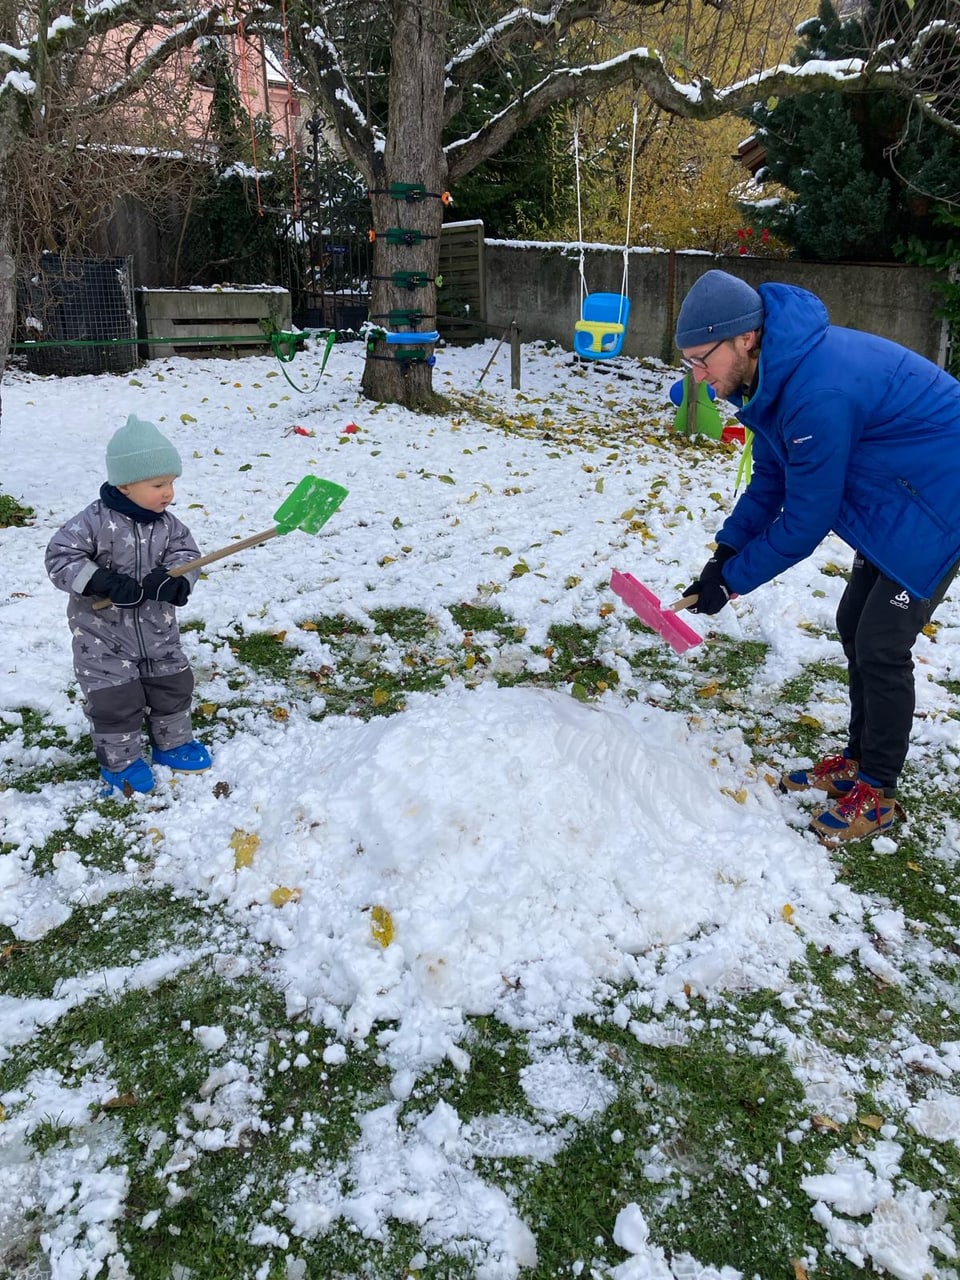 Vater mit Kind im Garten am Schneeschaufeln